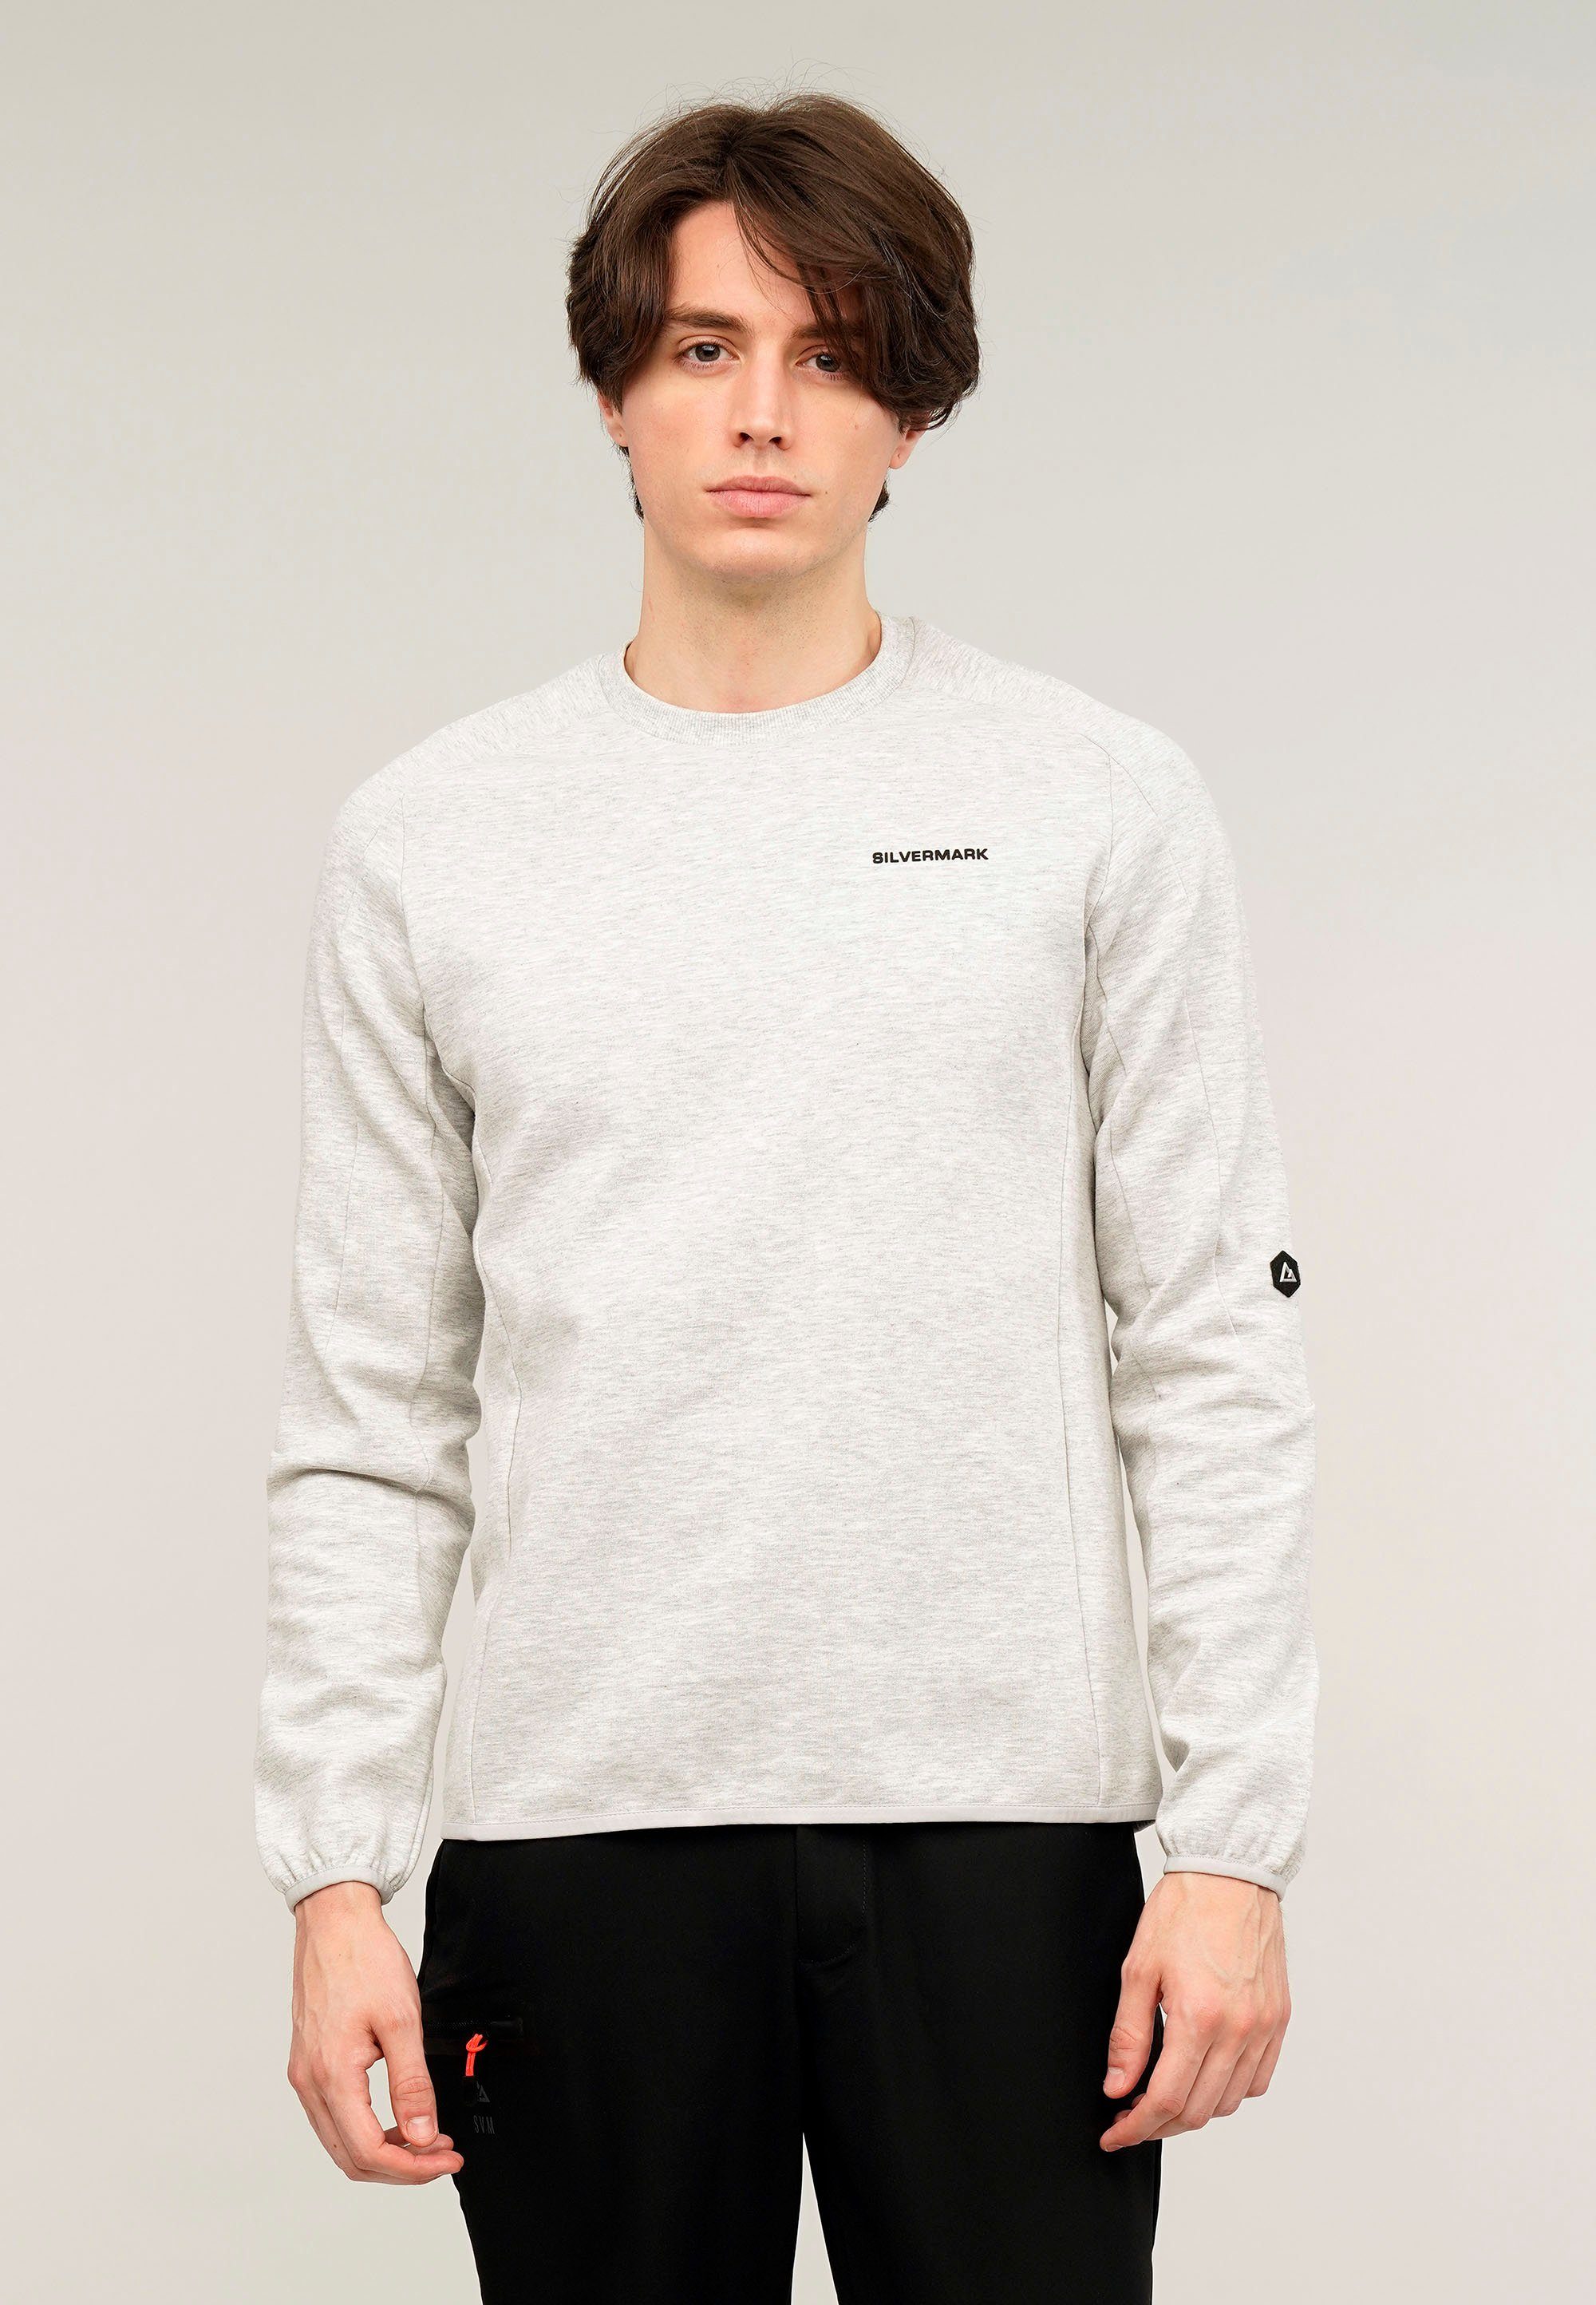 GIORDANO Sweatshirt Silvermark by G-Motion mit praktischen Rückentaschen hellgrau